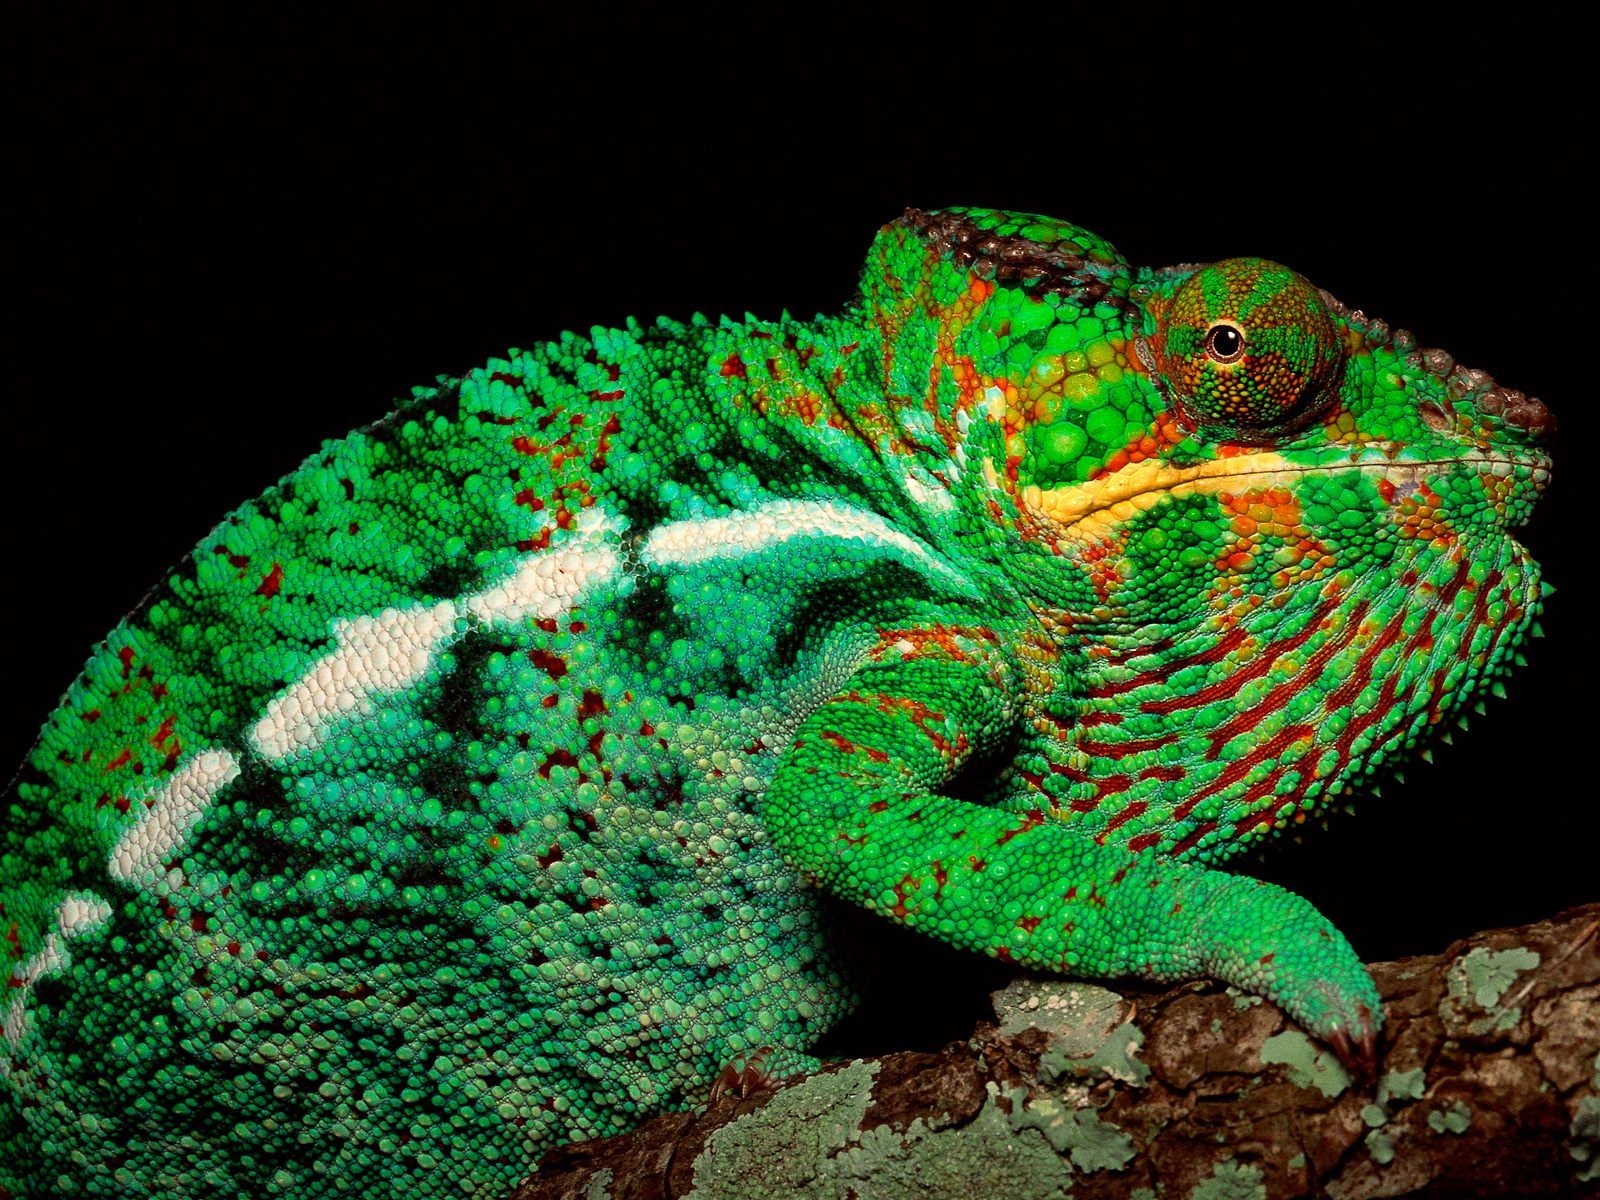 Reptile Image